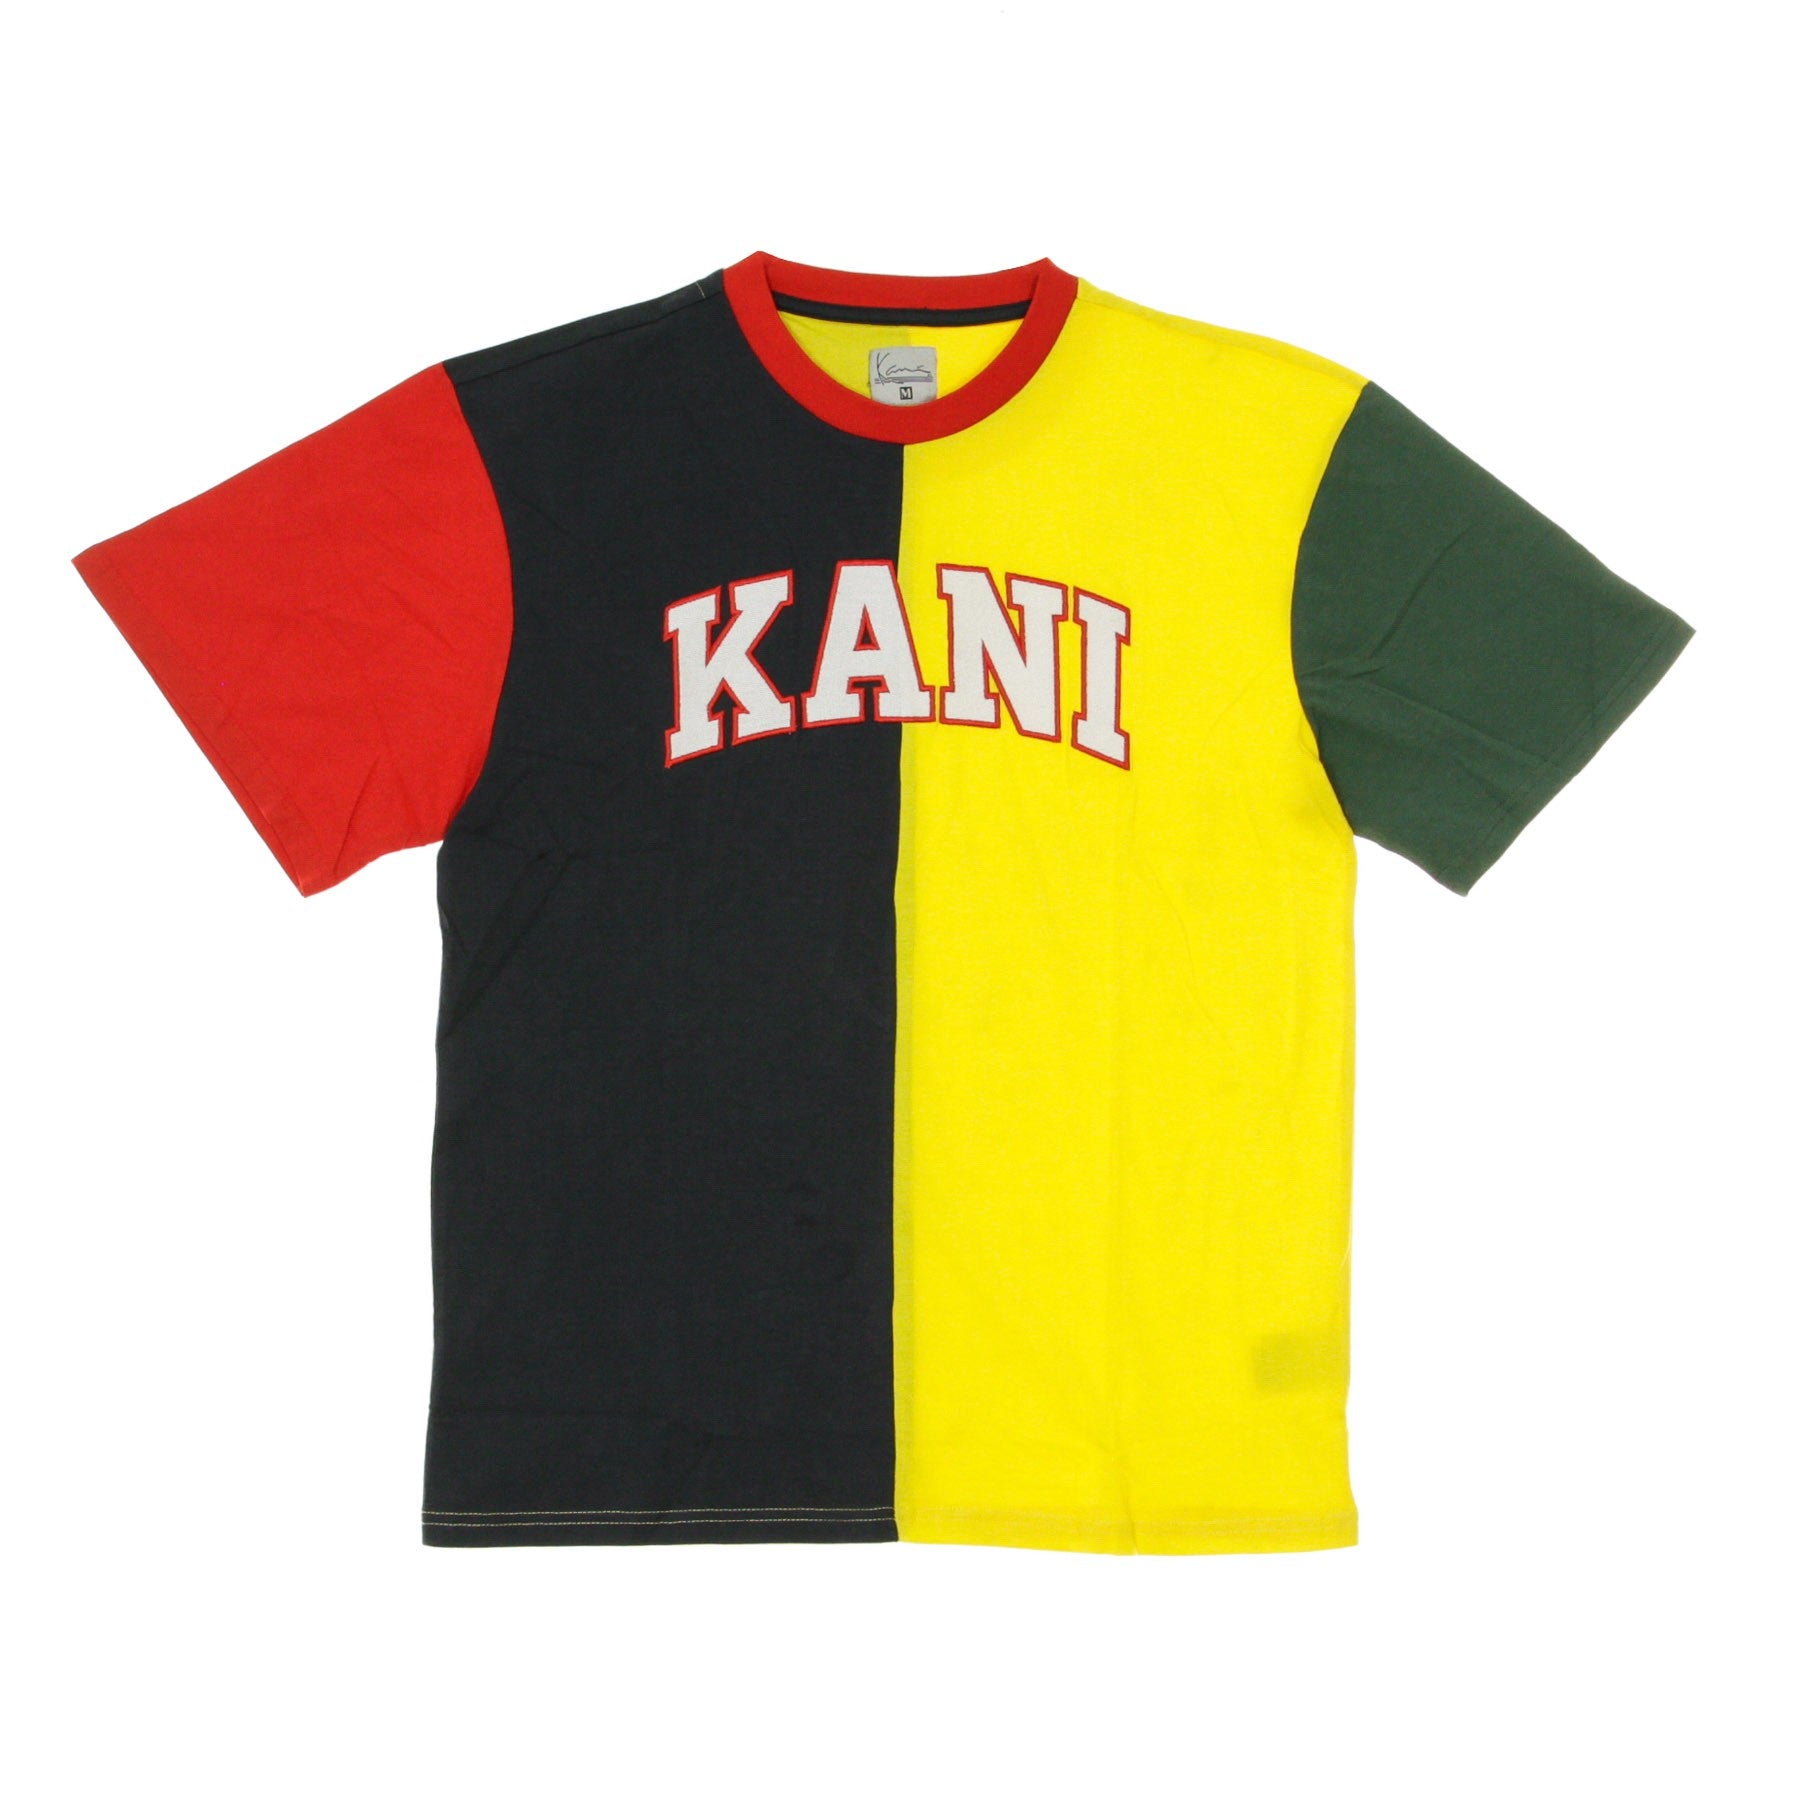 Men's College Block Tee T-Shirt Navy/yellow/red/green/white